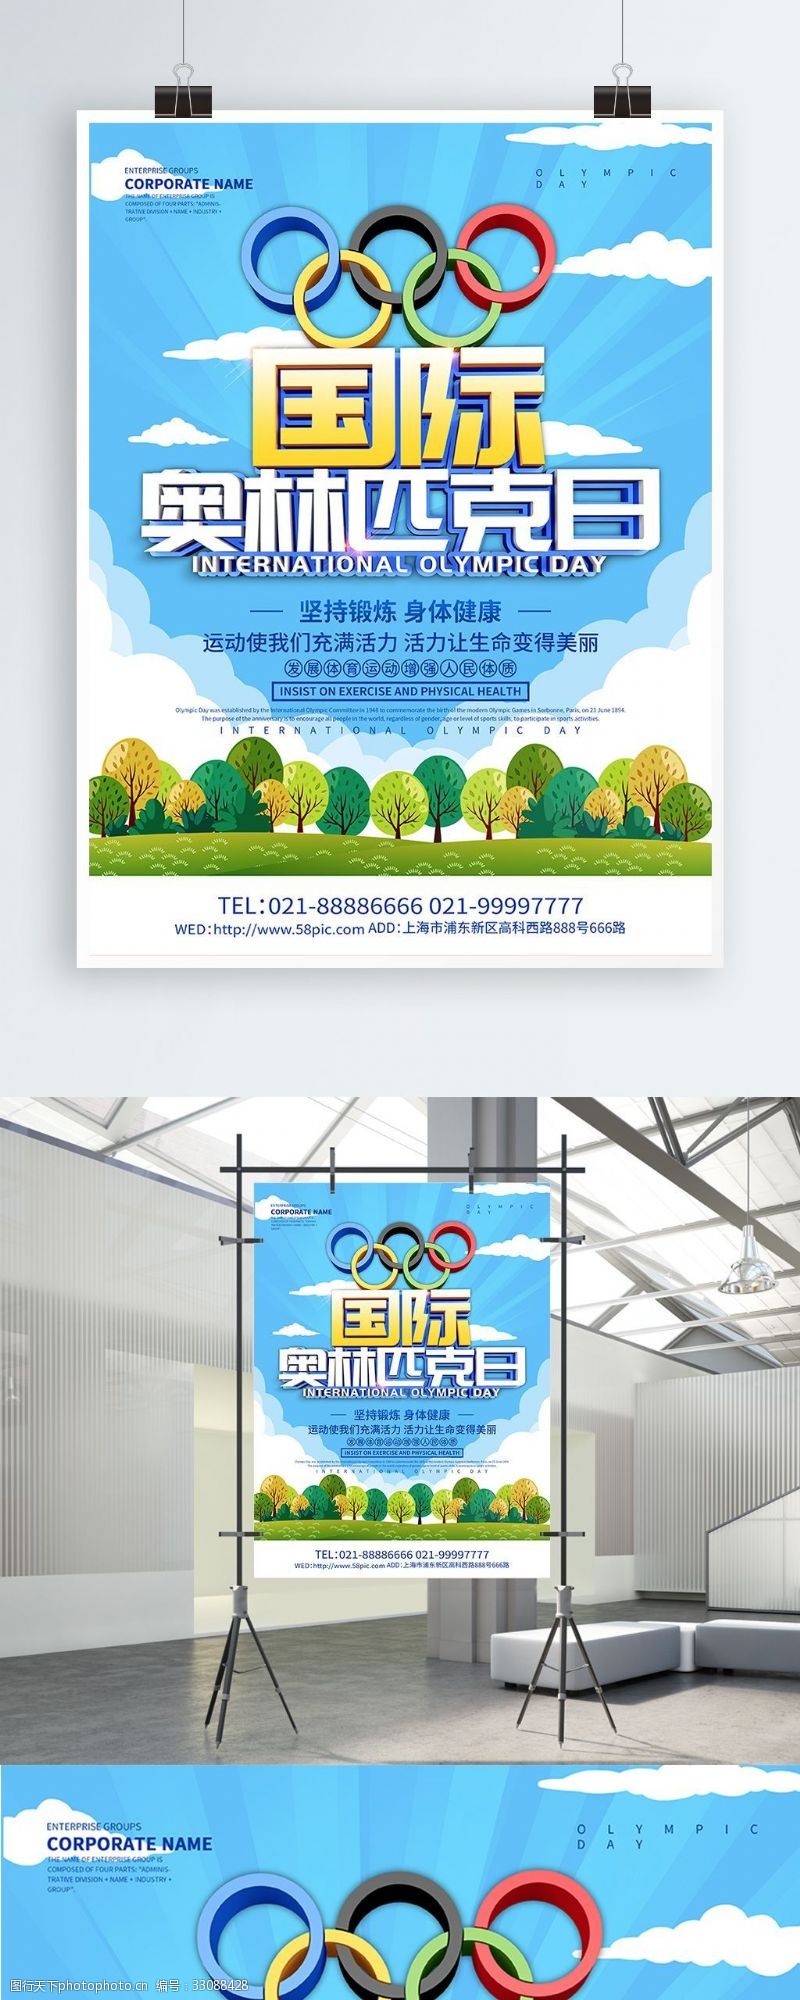 蓝色小清新国际奥林匹克日海报设计